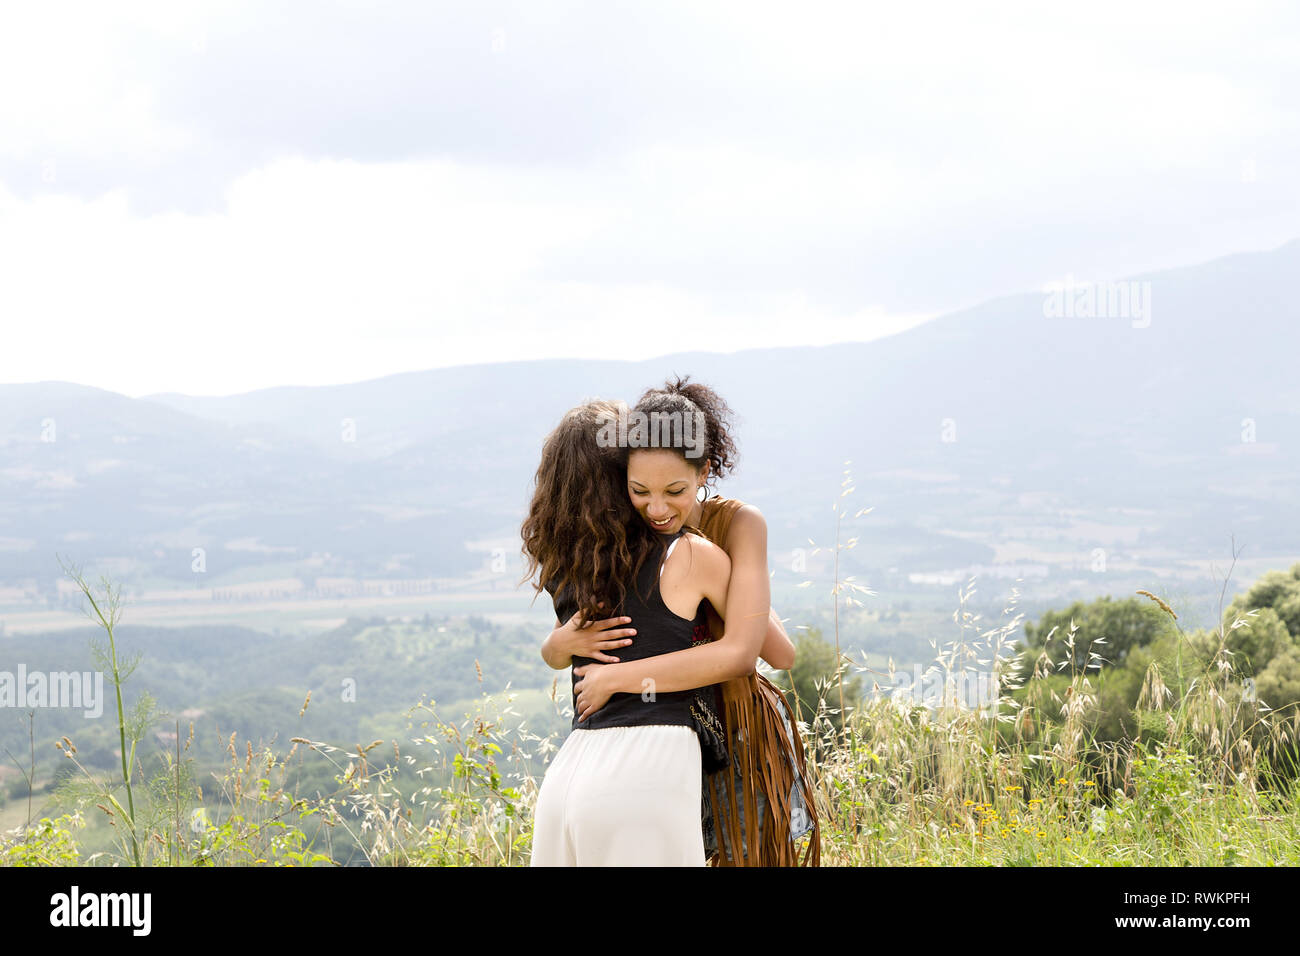 Friends hugging on hilltop, Città della Pieve, Umbria, Italy Stock Photo